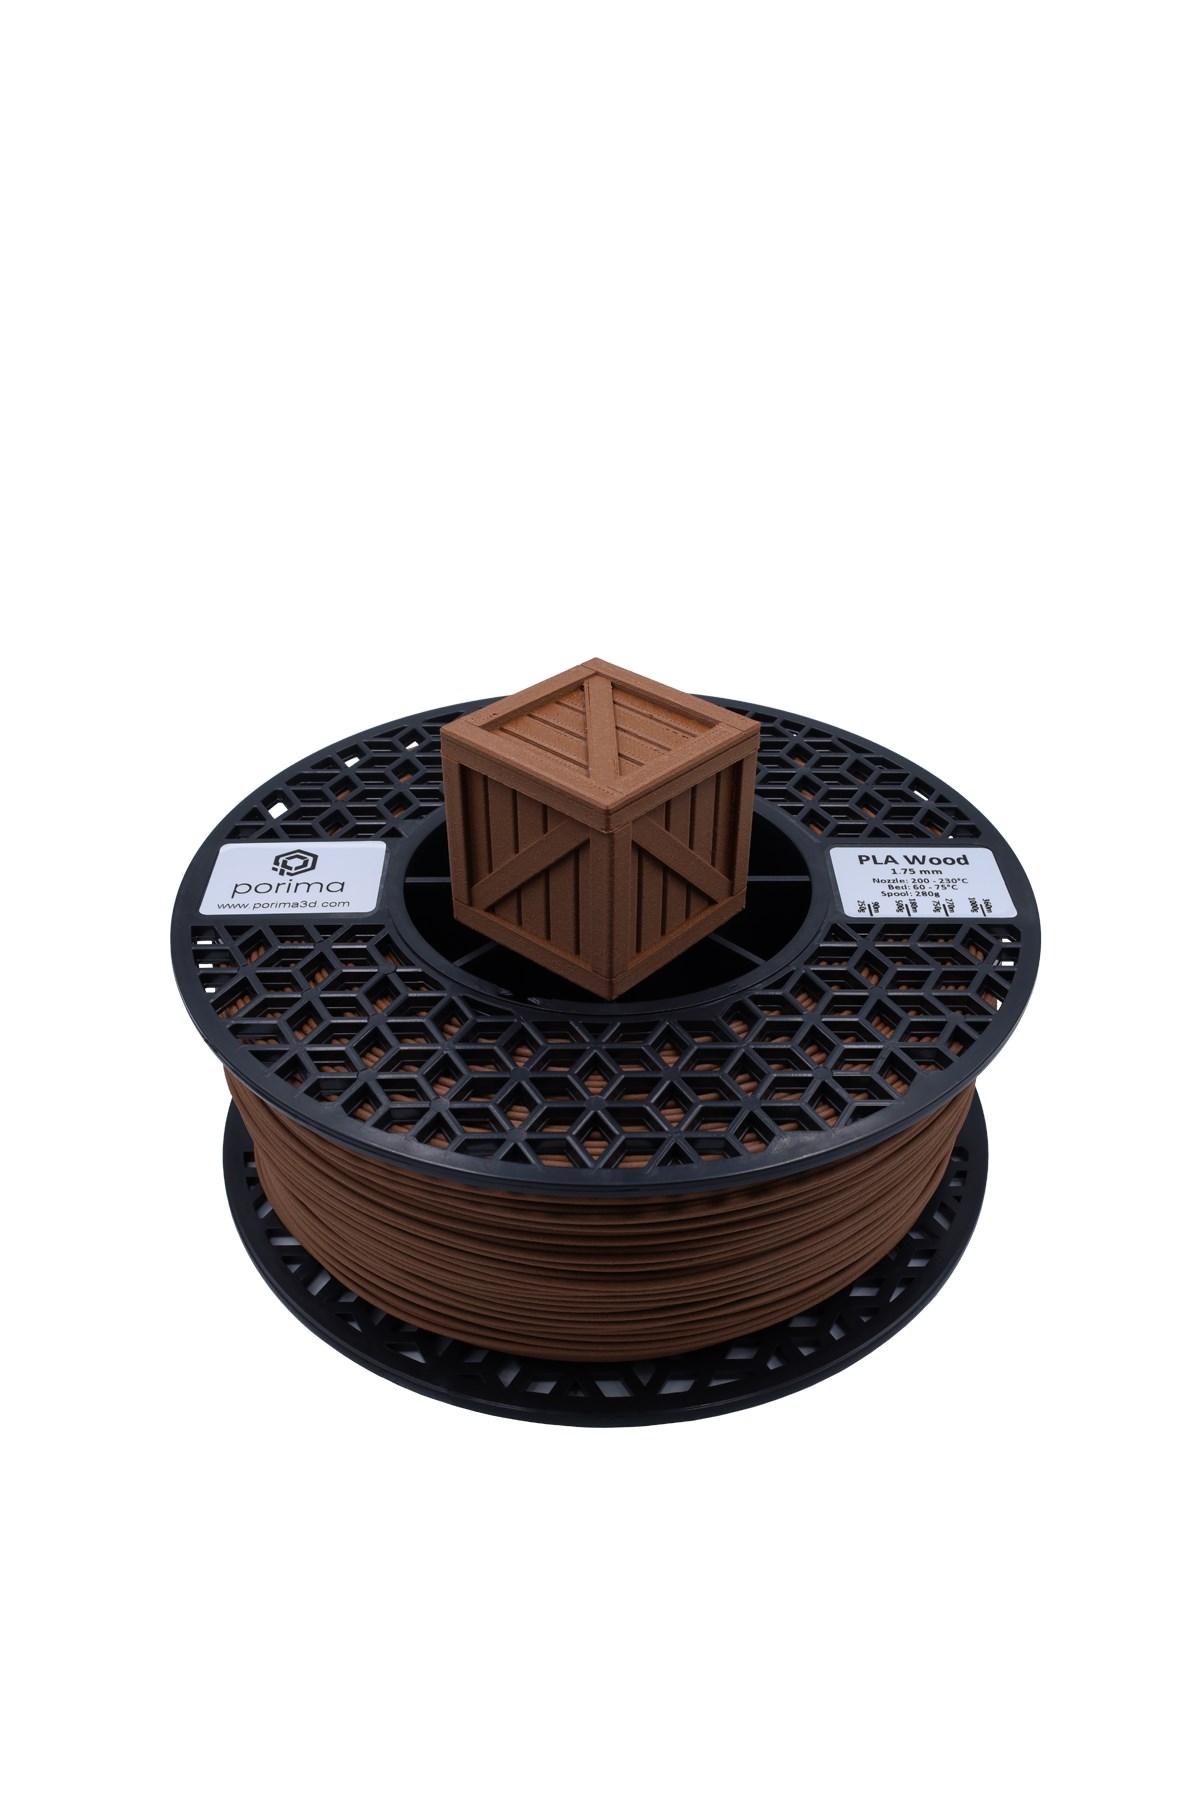 eSUN Wood PLA 1.75mm 3D Filament 0.5KG/1KG